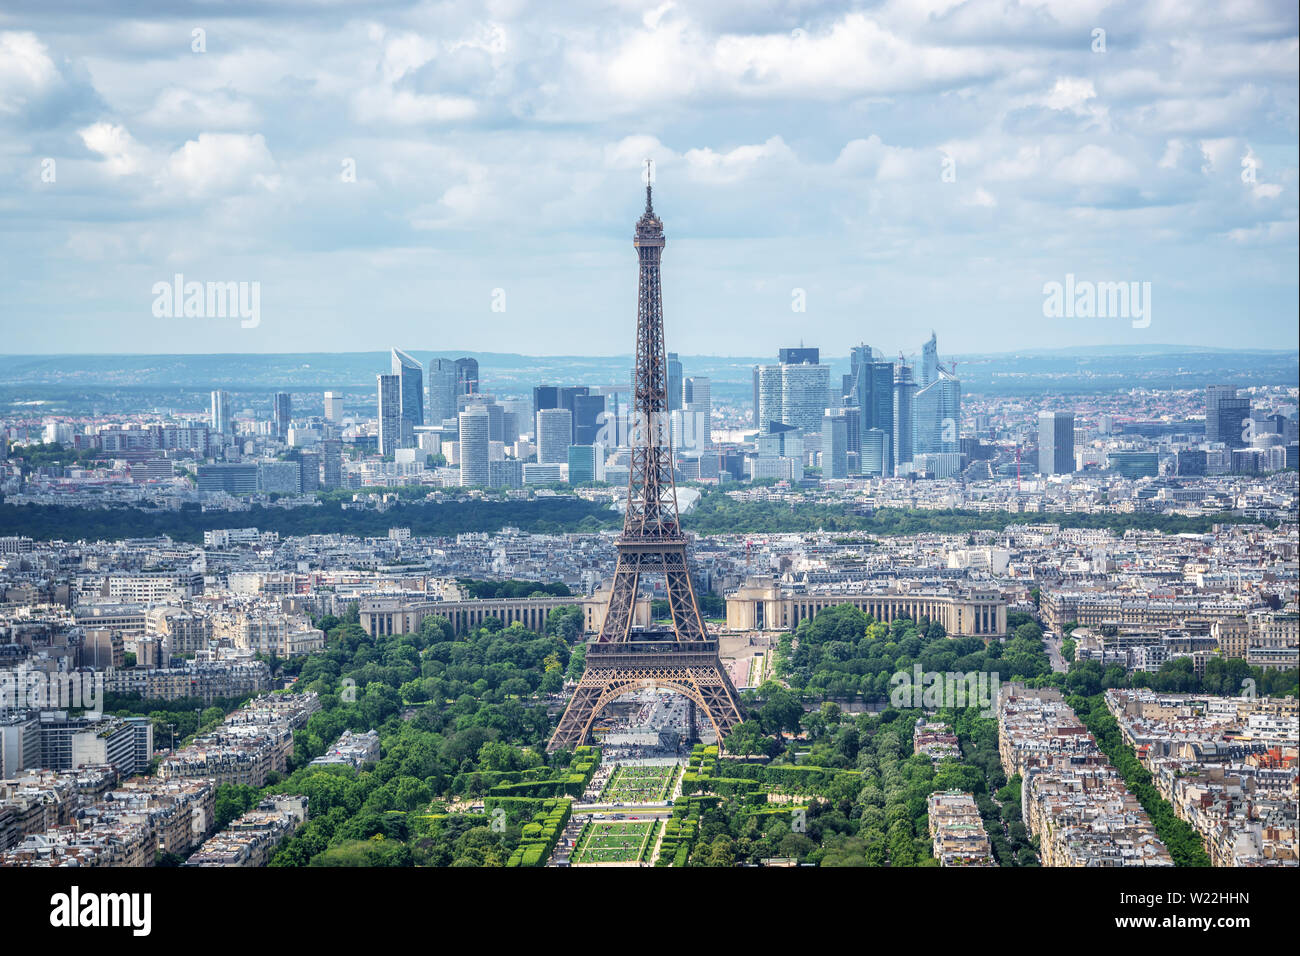 Vue panoramique aérienne de Paris avec la Tour Eiffel et quartier des affaires de la Défense, d'horizon, la France et l'Europe city travel concept Banque D'Images